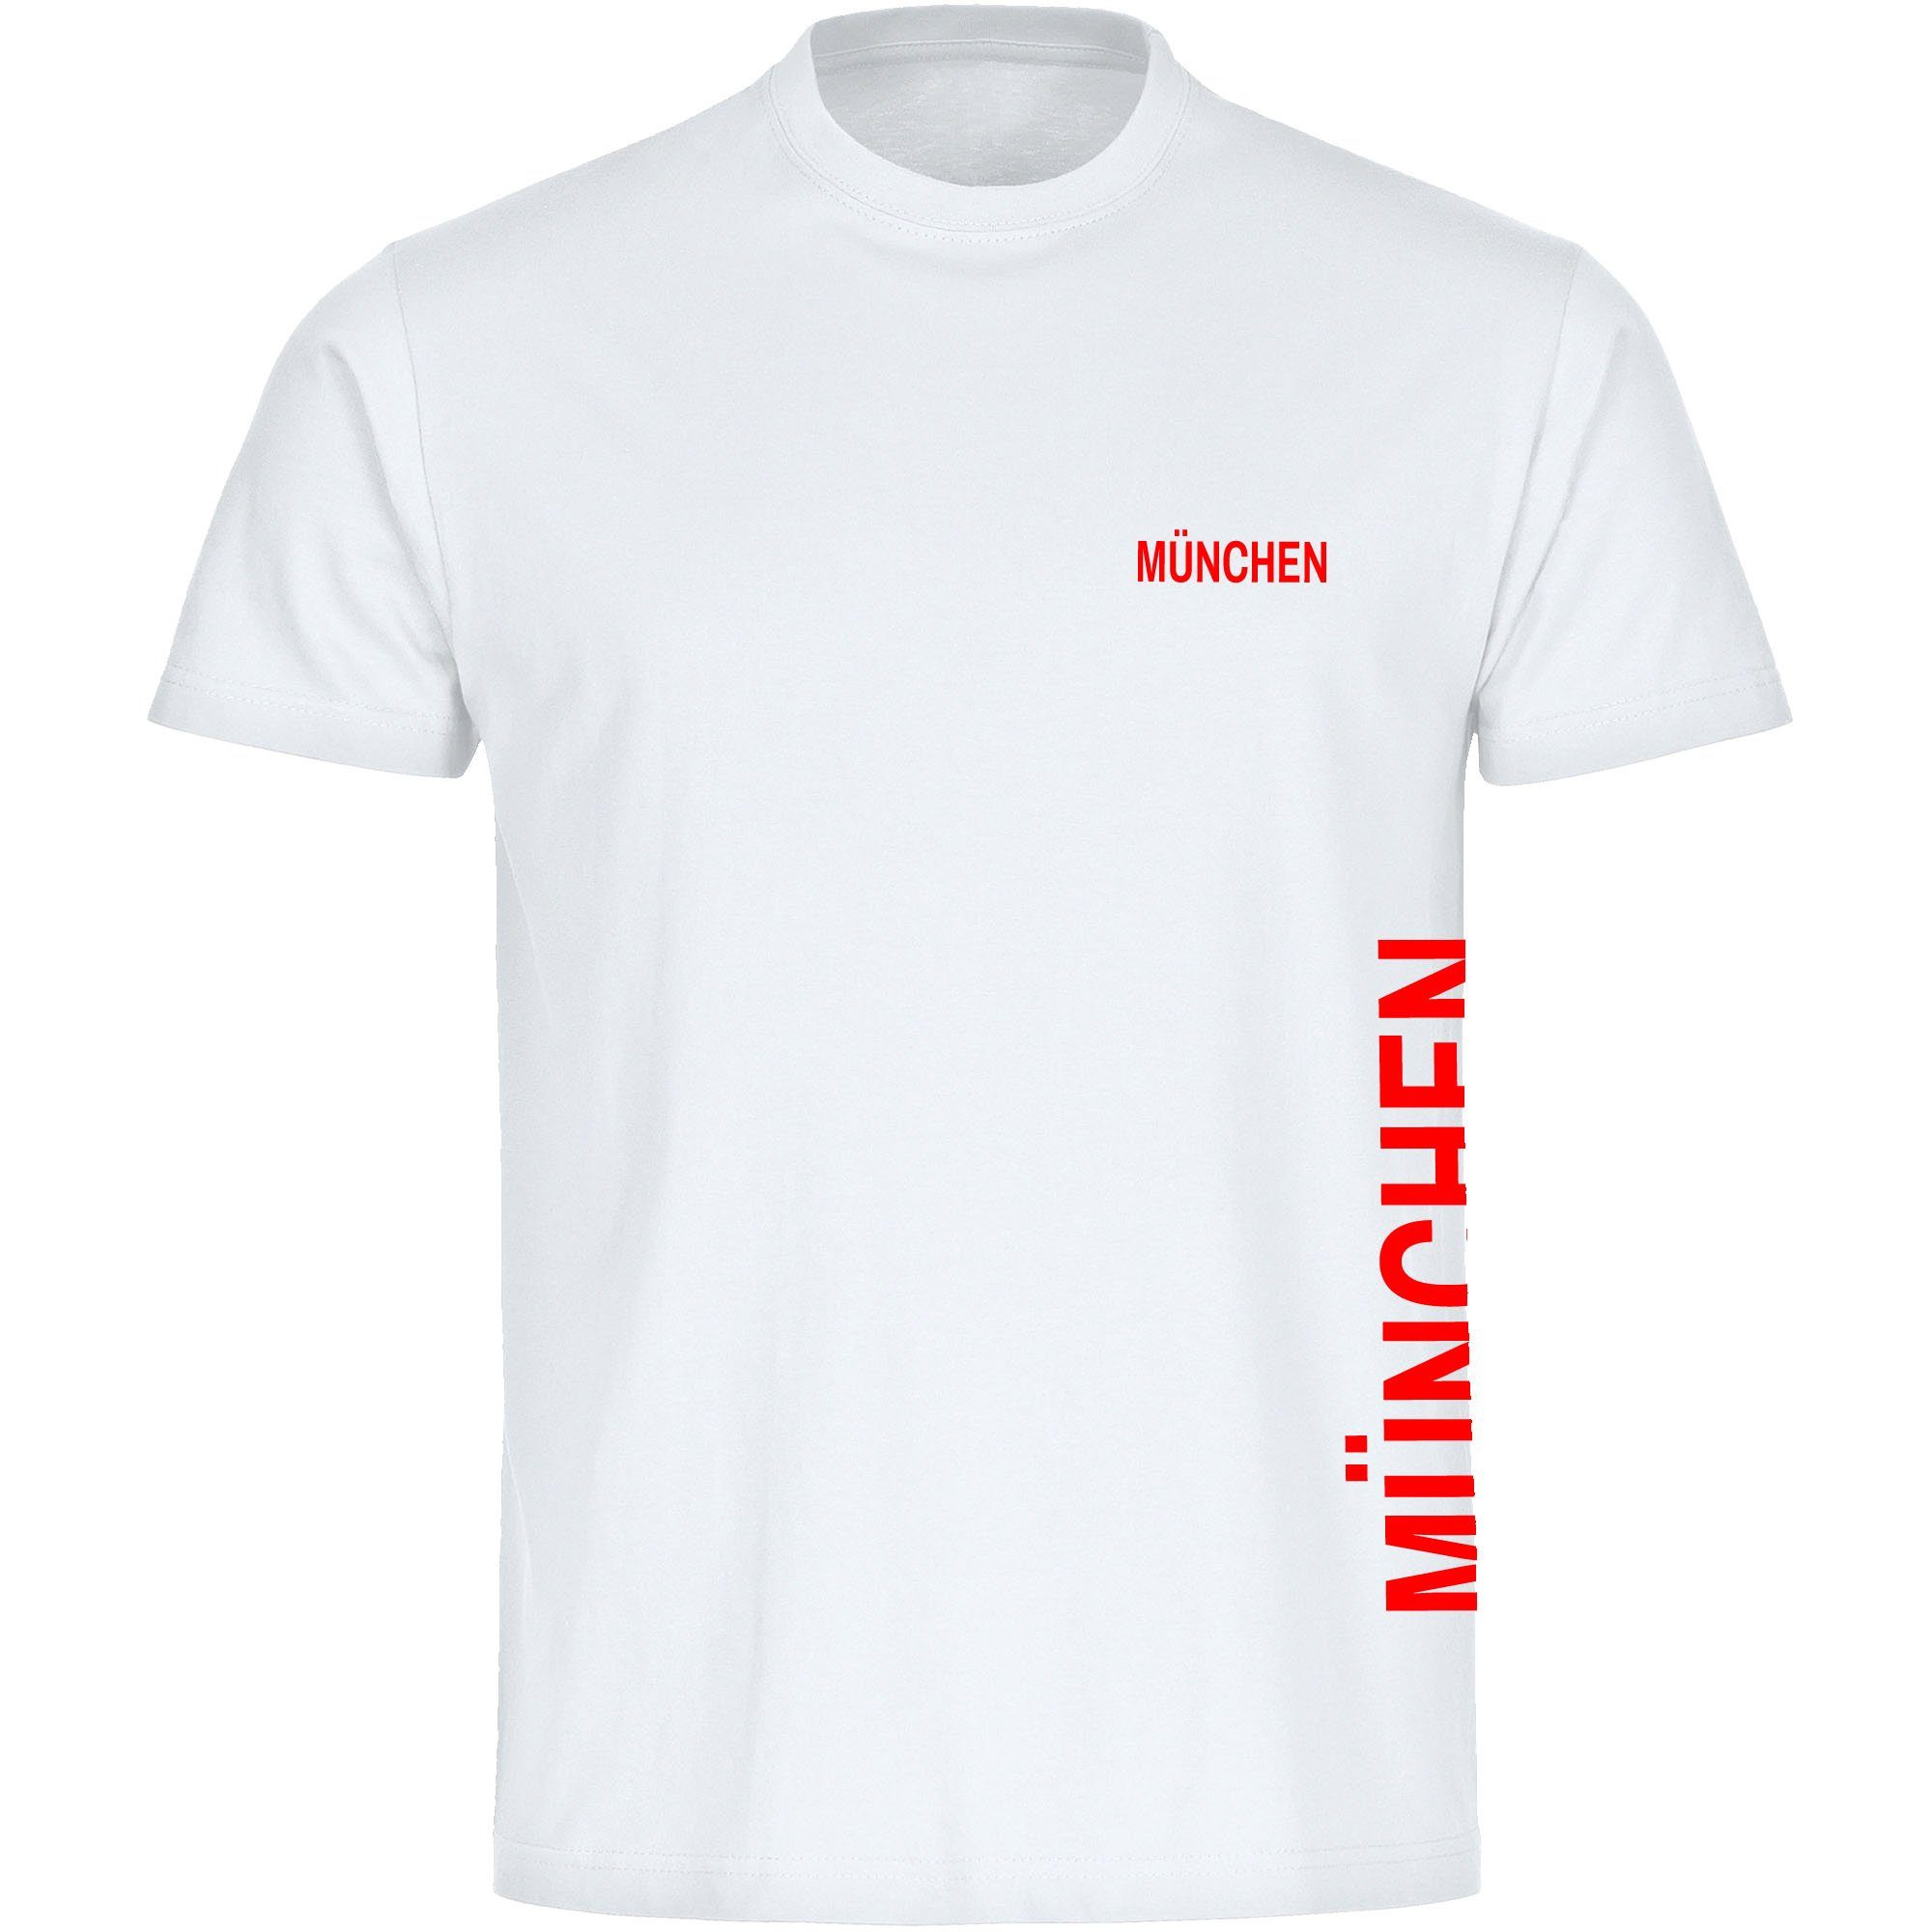 multifanshop T-Shirt Herren München rot - Brust & Seite - Männer